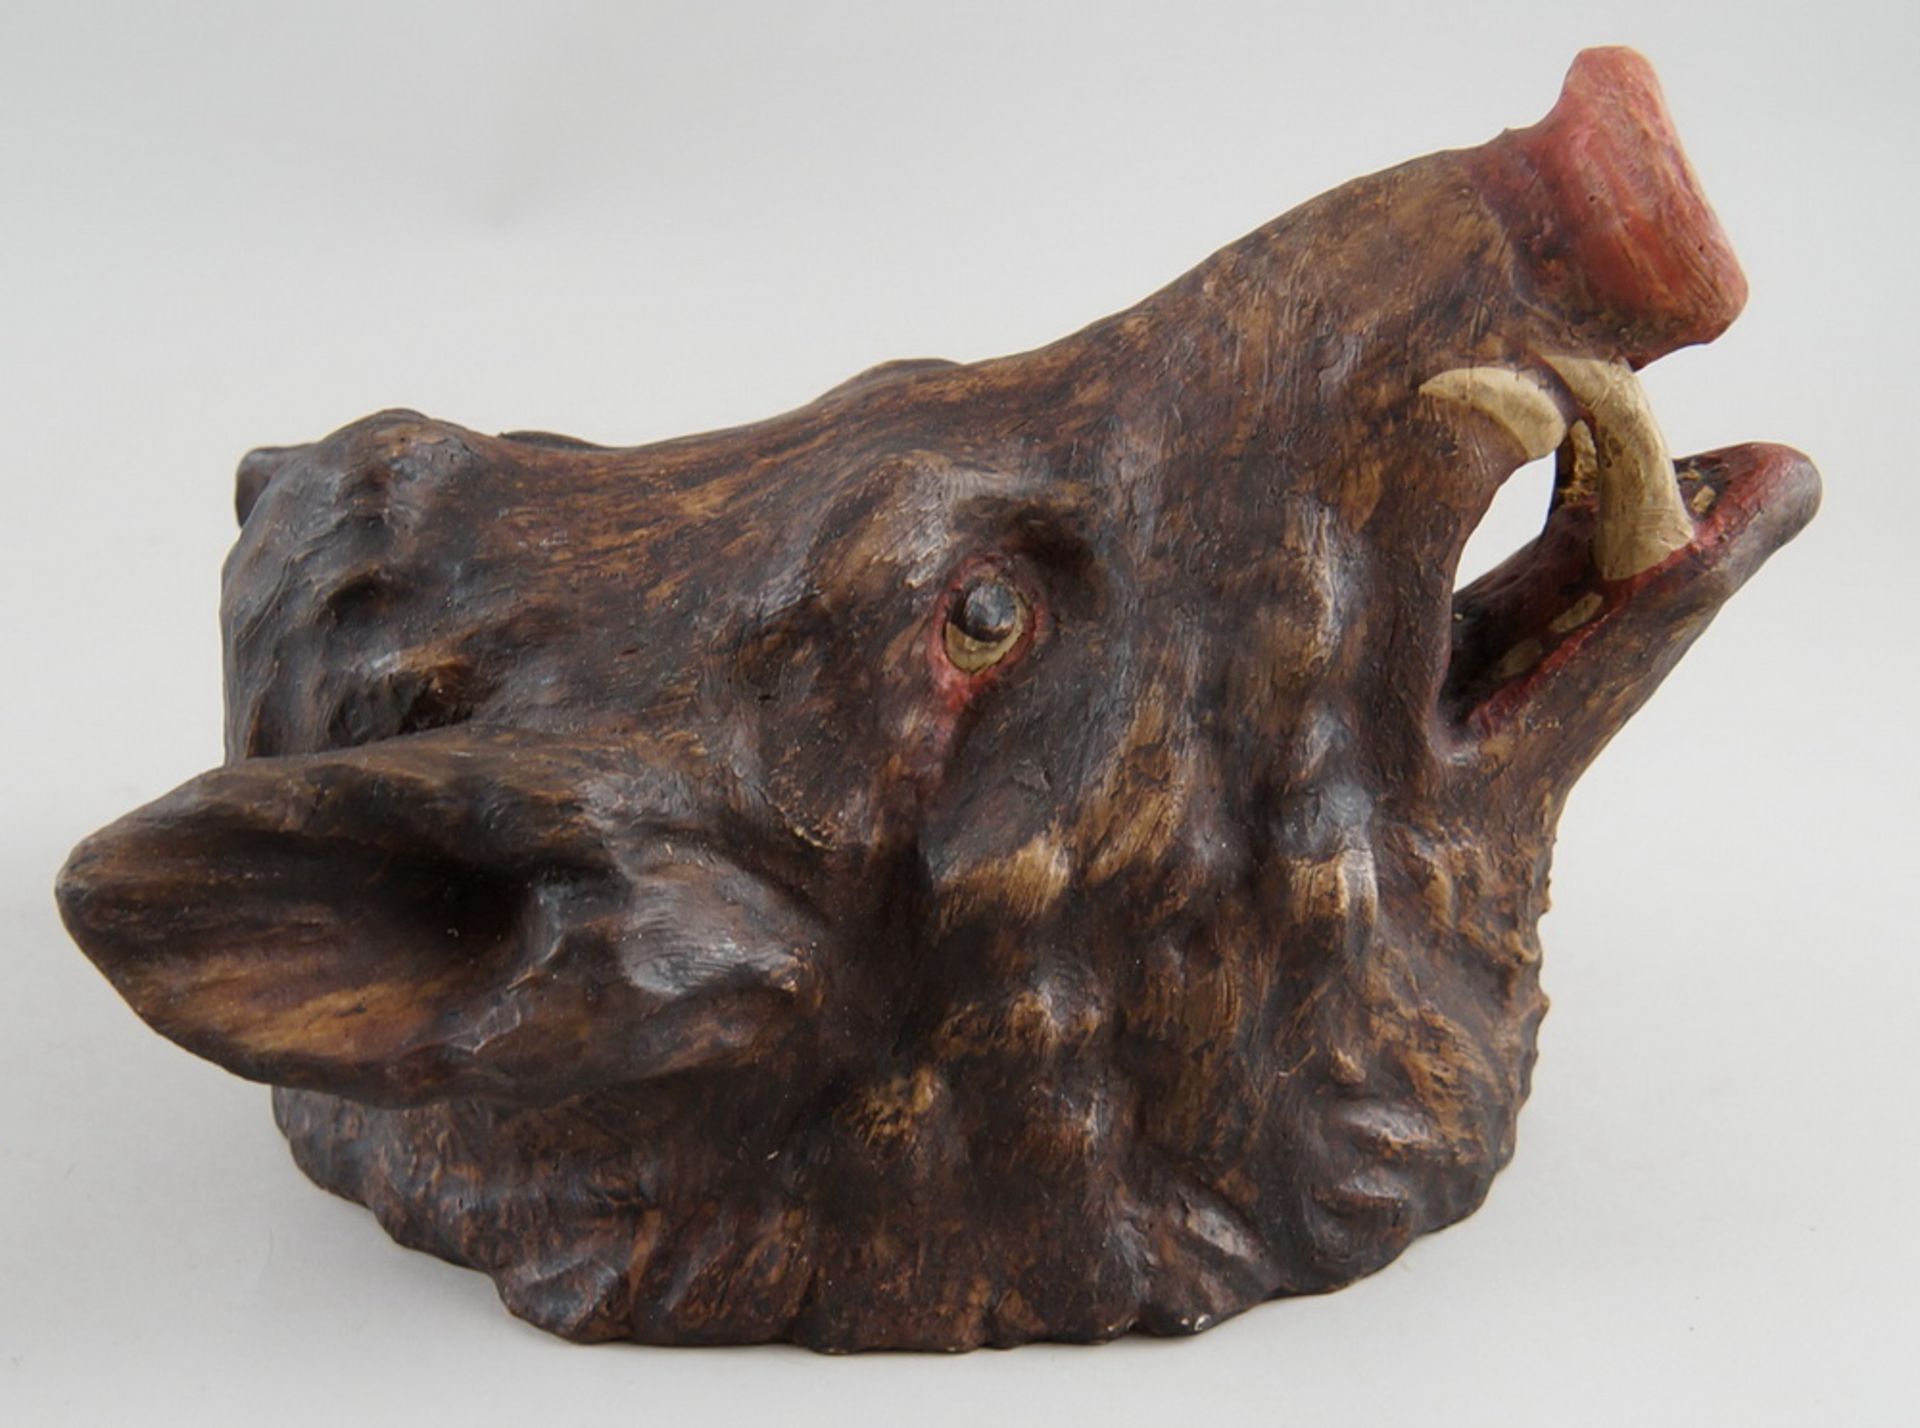 Saukopf / Wildschwein / Eber, Holz geschnitzt und gefasst, auf Brett zum hängen, H 27 cm - Bild 4 aus 6